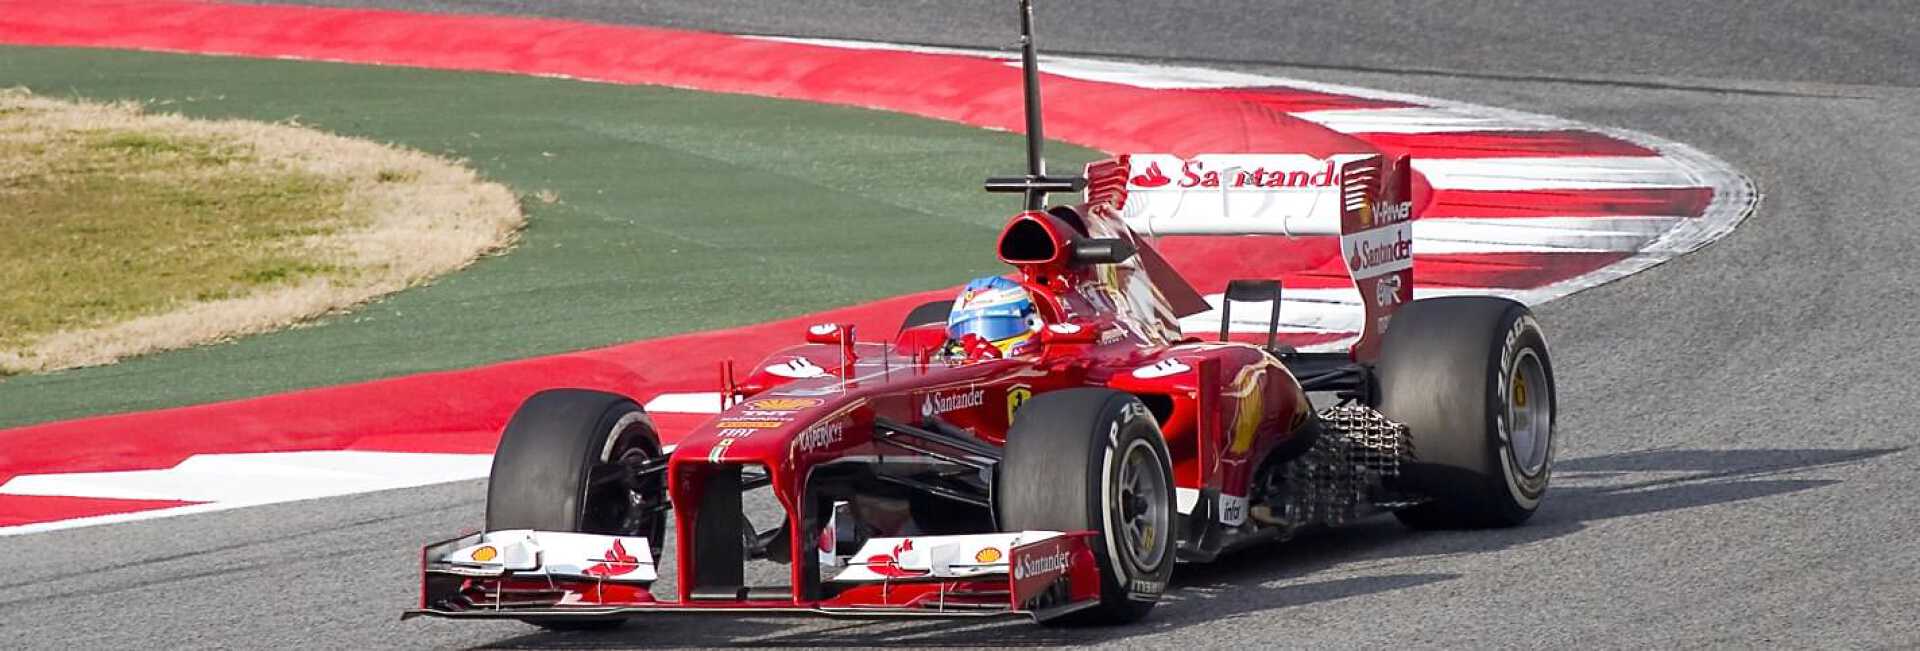 Voiture de course rouge Ferrari pendant le Grand Prix de Formule 1 d'Italie